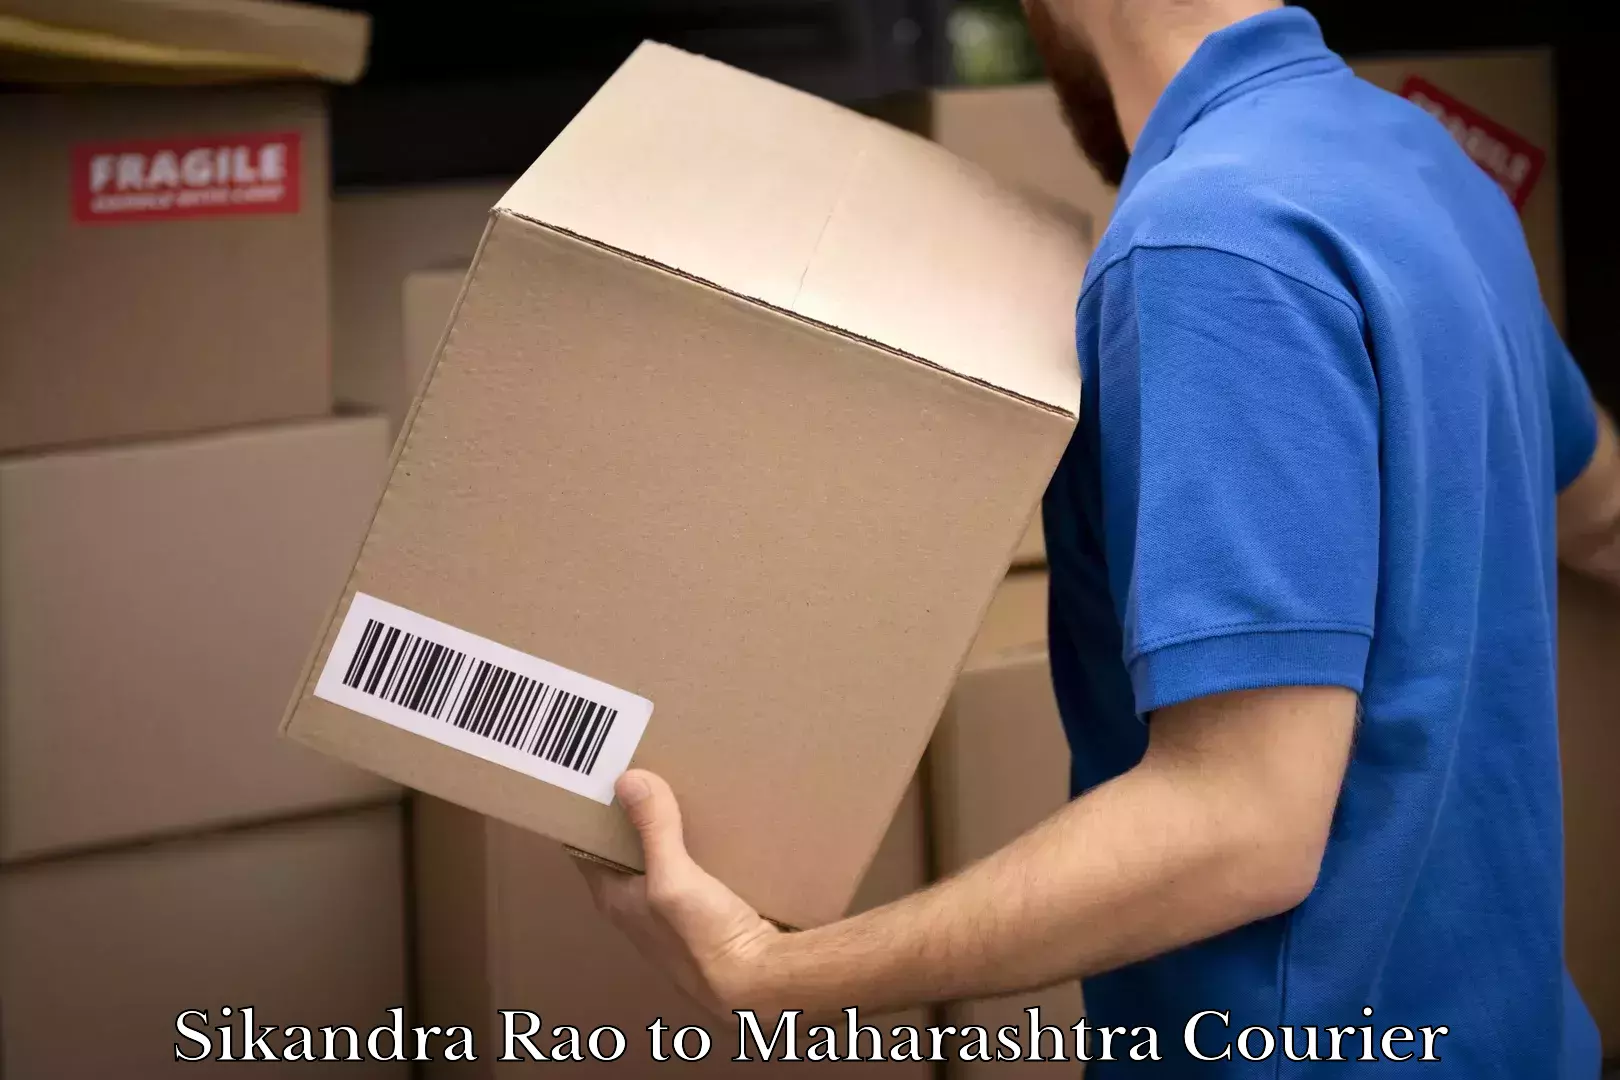 Multi-national courier services Sikandra Rao to Maharashtra